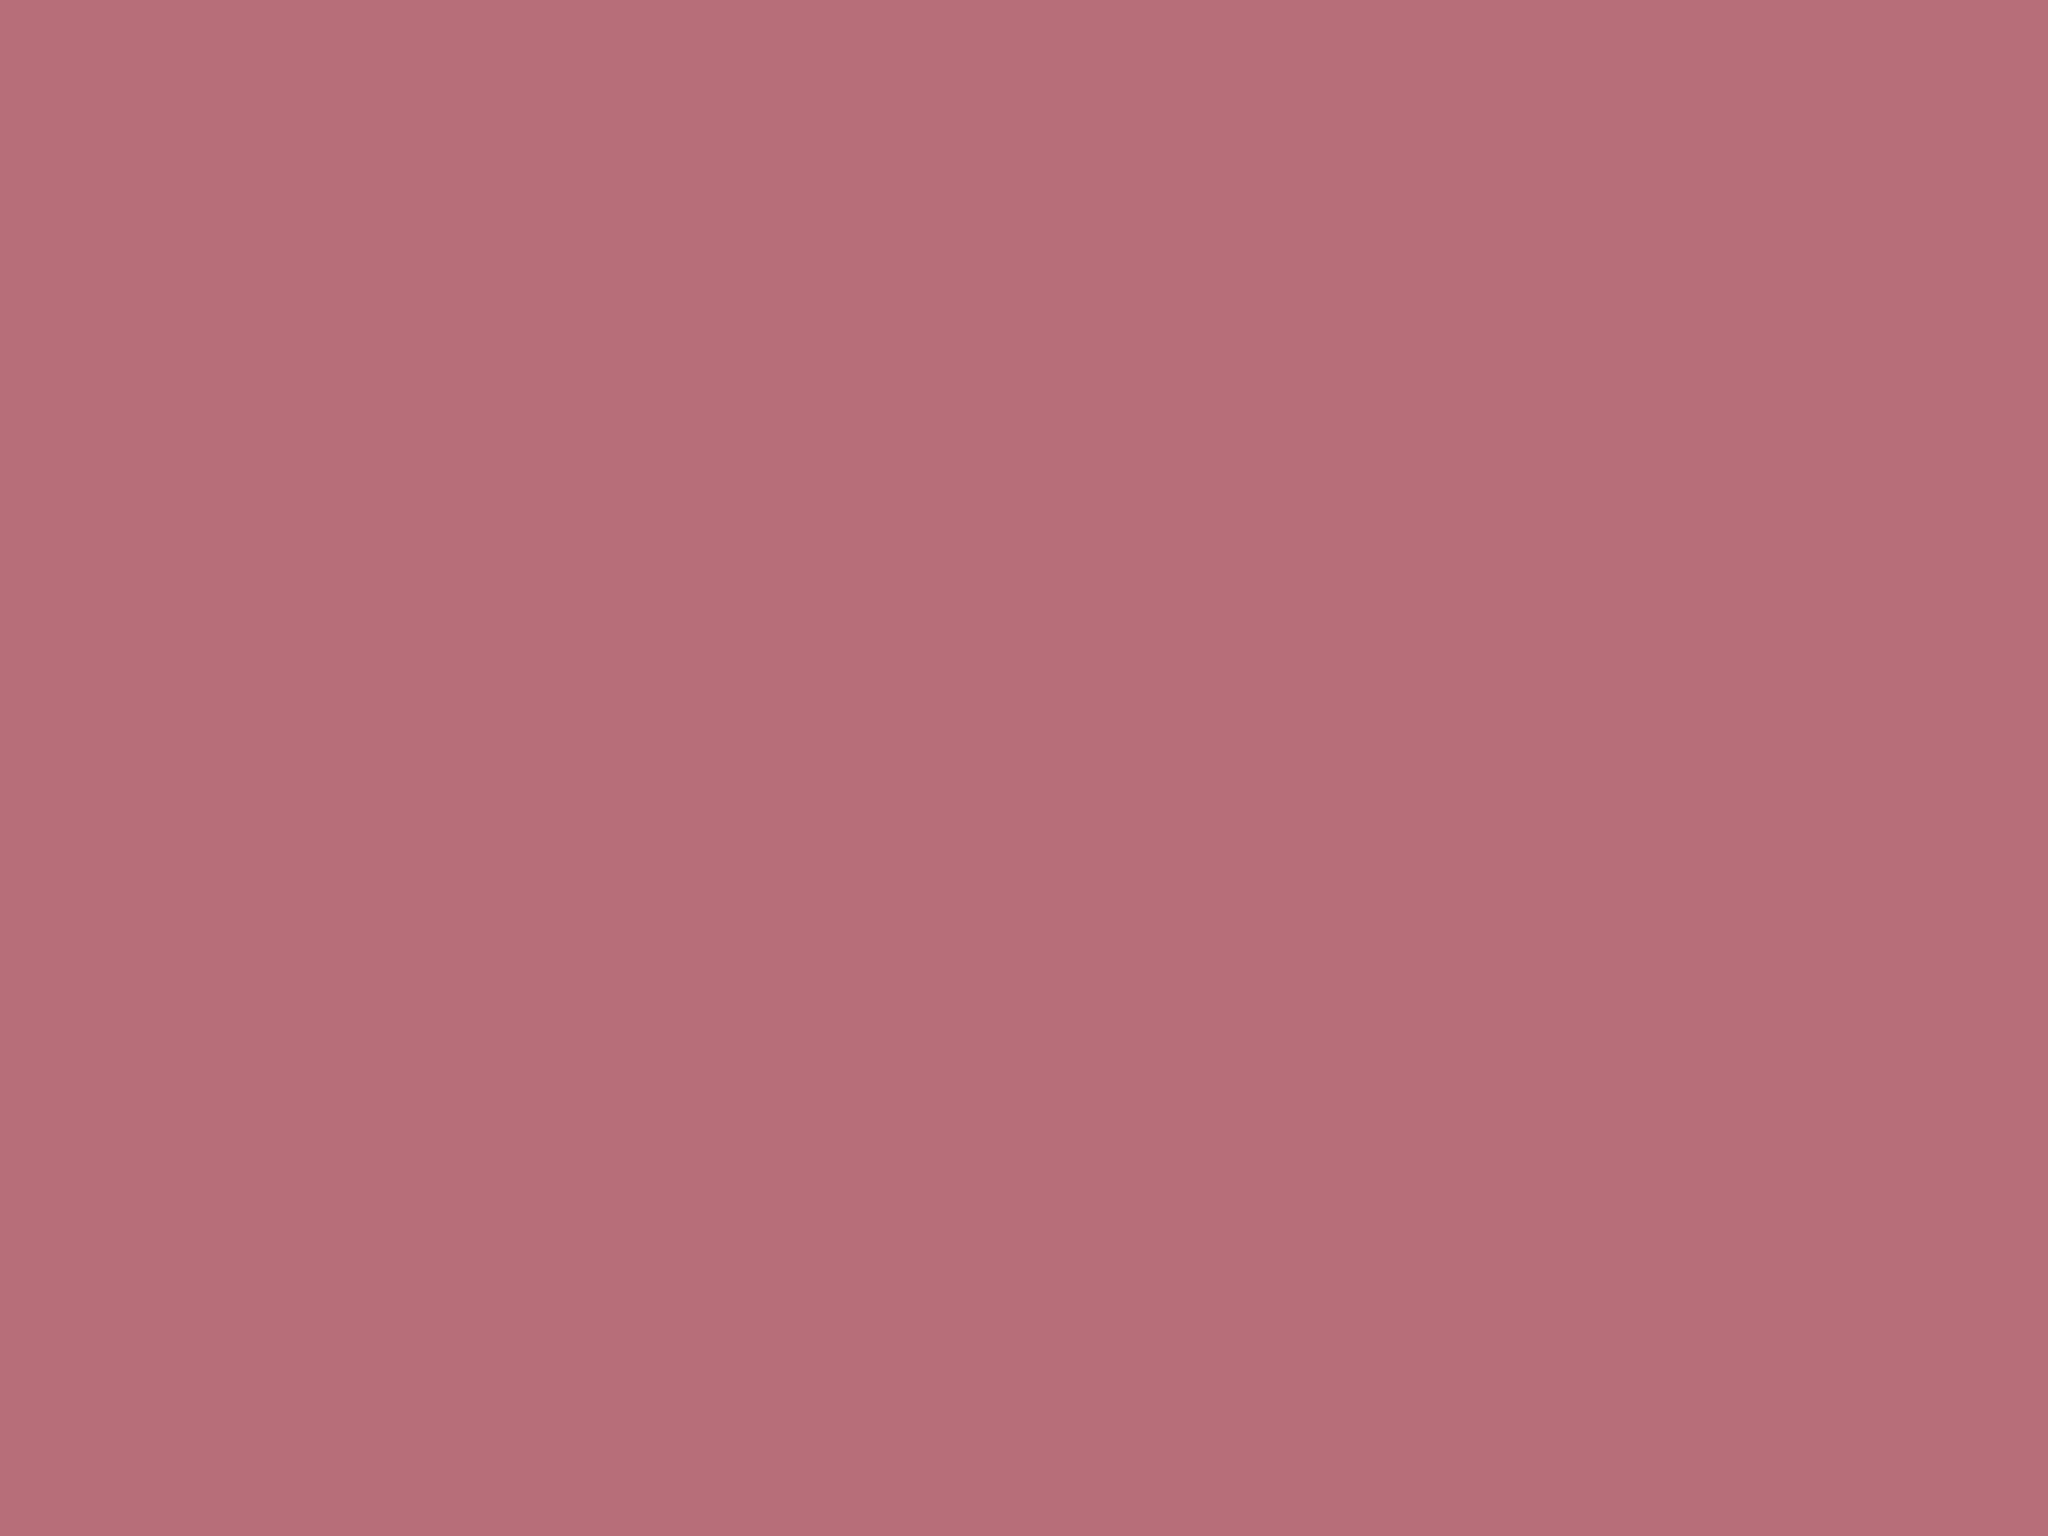 Amore Di Colore Pink Plain Design Wallpaper 301062  Amimurus India